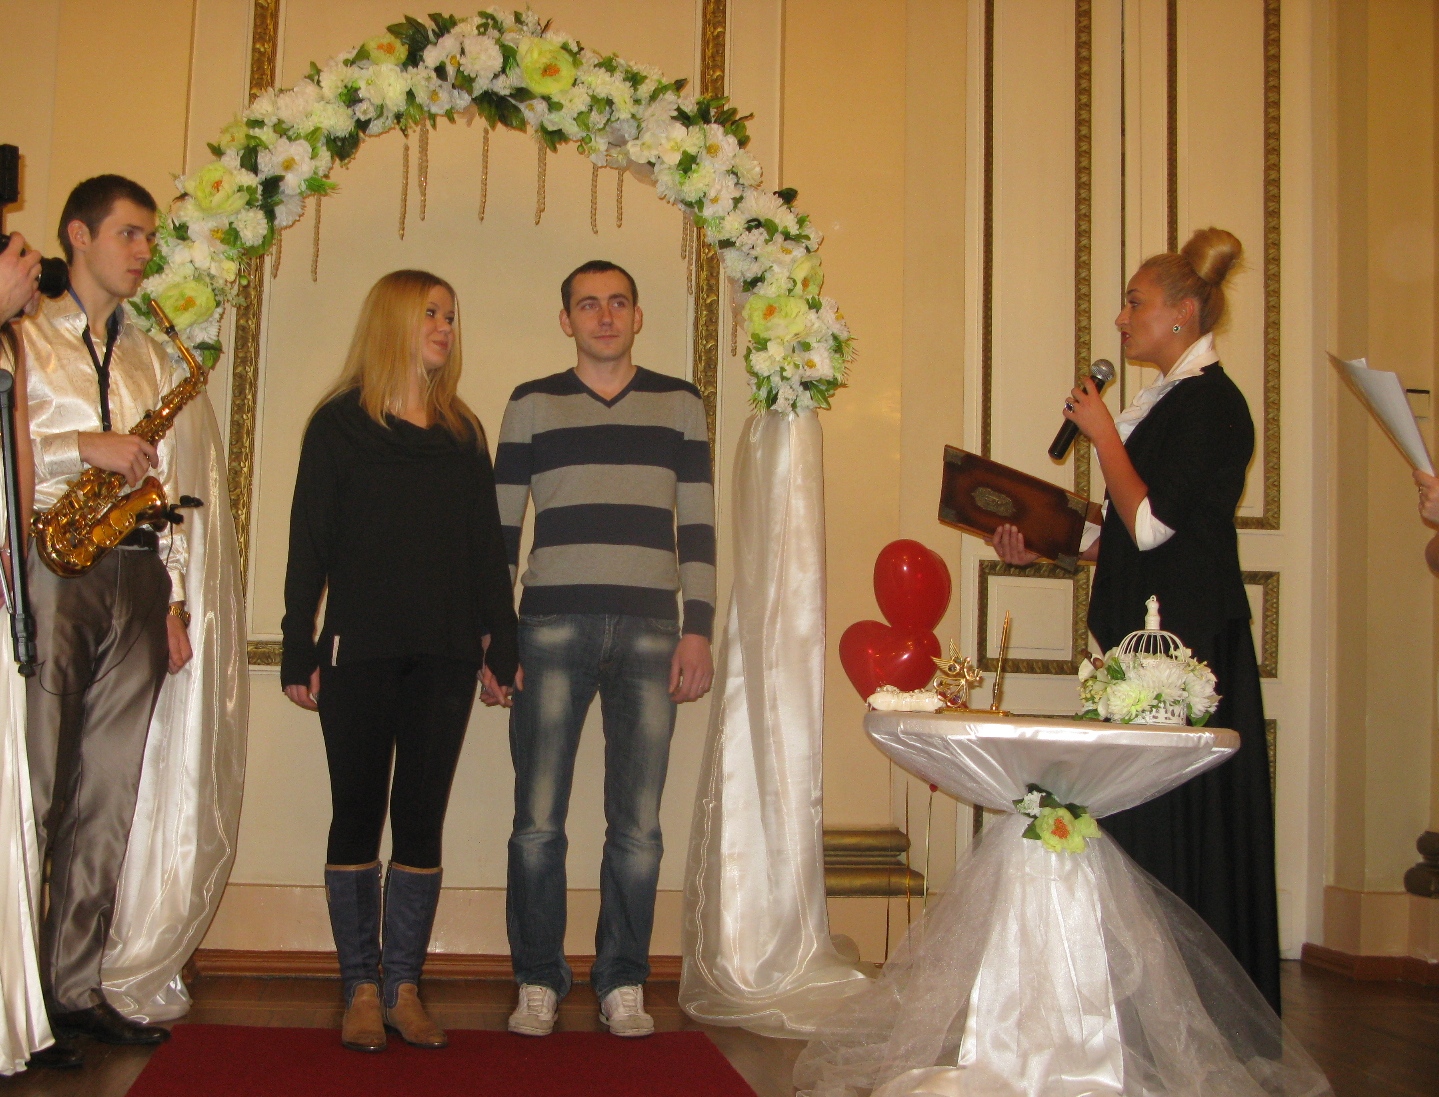 Олексій Нізіенко каже, що харків'яни звикли відзначати весілля в класичному стилі, але все більшу популярність набирають європейські виїзні церемонії